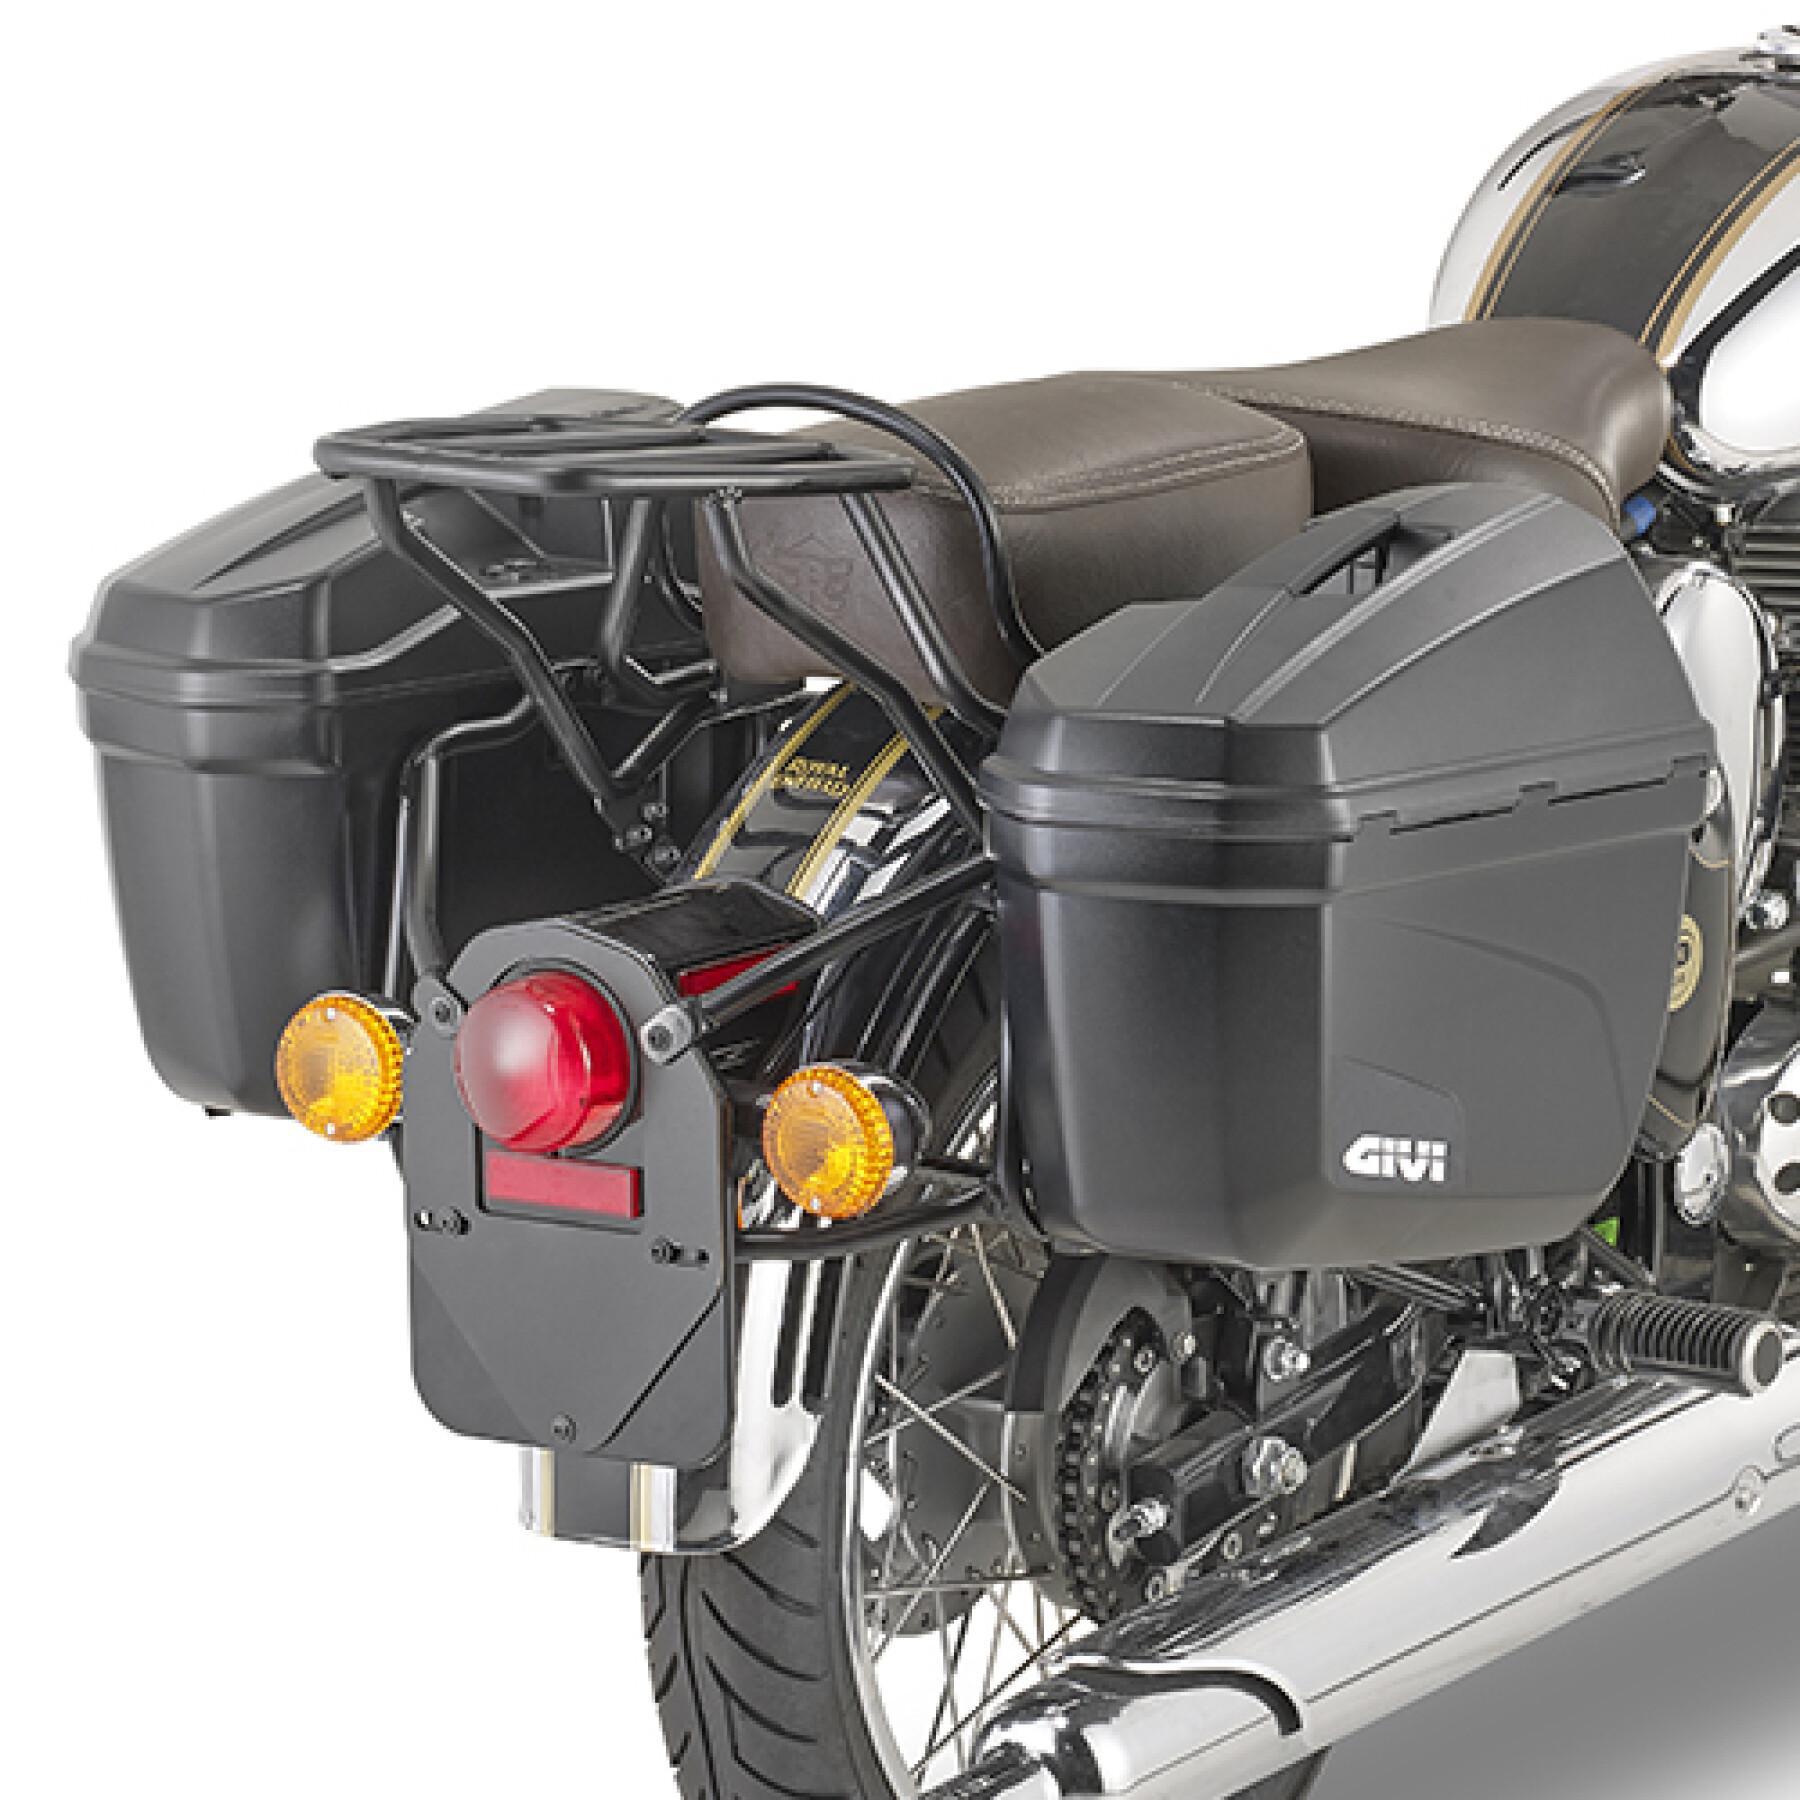 Support valises latérales moto Givi Monokey Royal Enfiel Classic 500 (19 À 20)